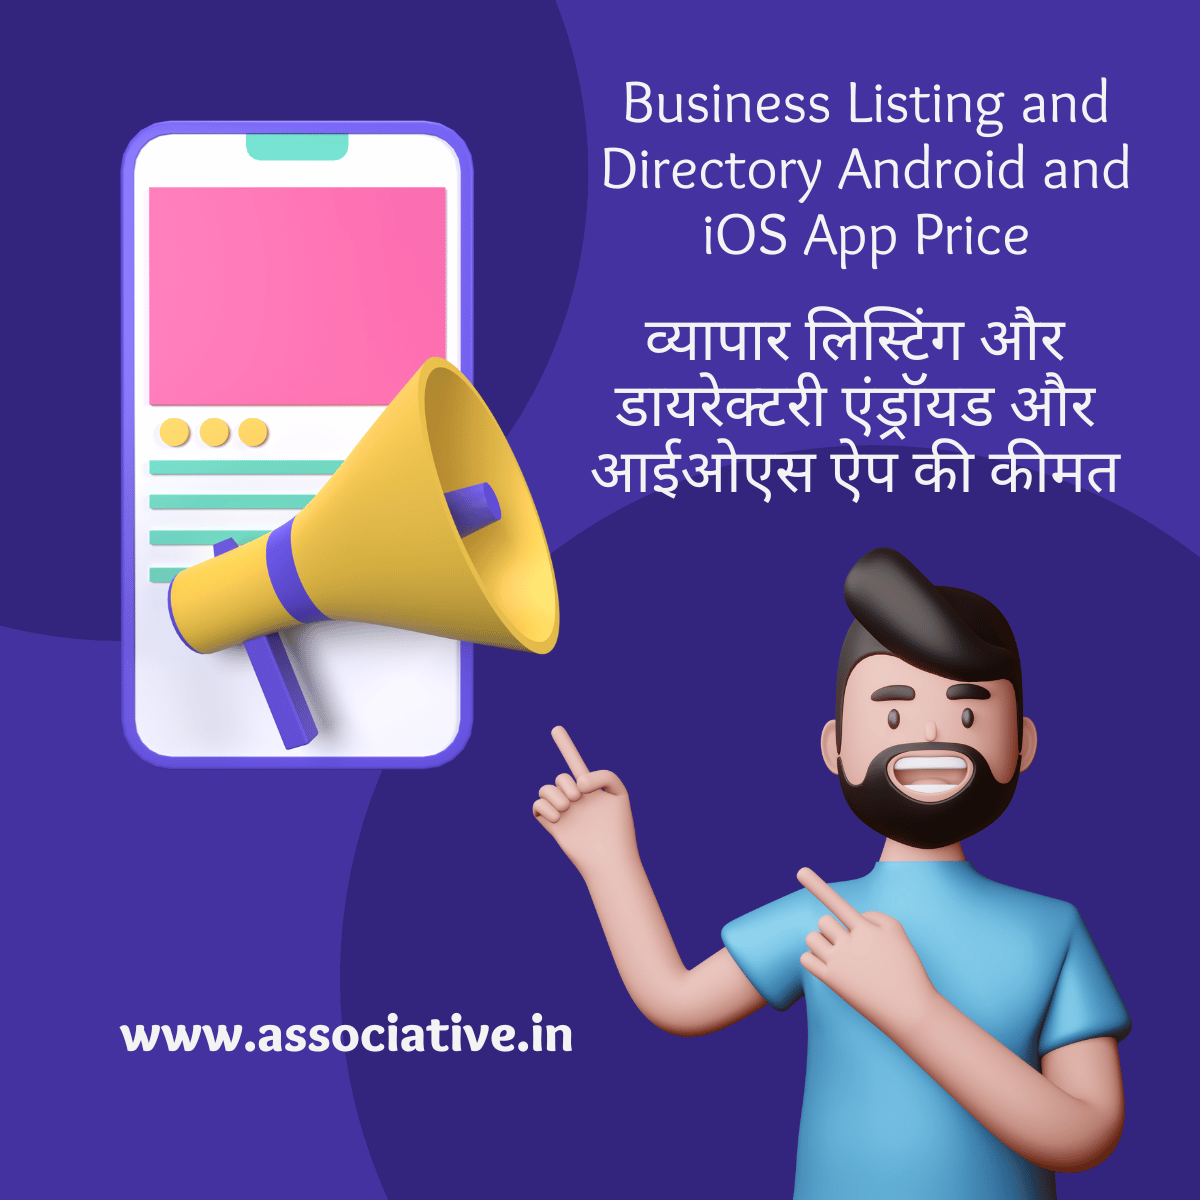 Business Listing and Directory Android and iOS App Price

व्यापार लिस्टिंग और डायरेक्टरी एंड्रॉयड और आईओएस ऐप की कीमत